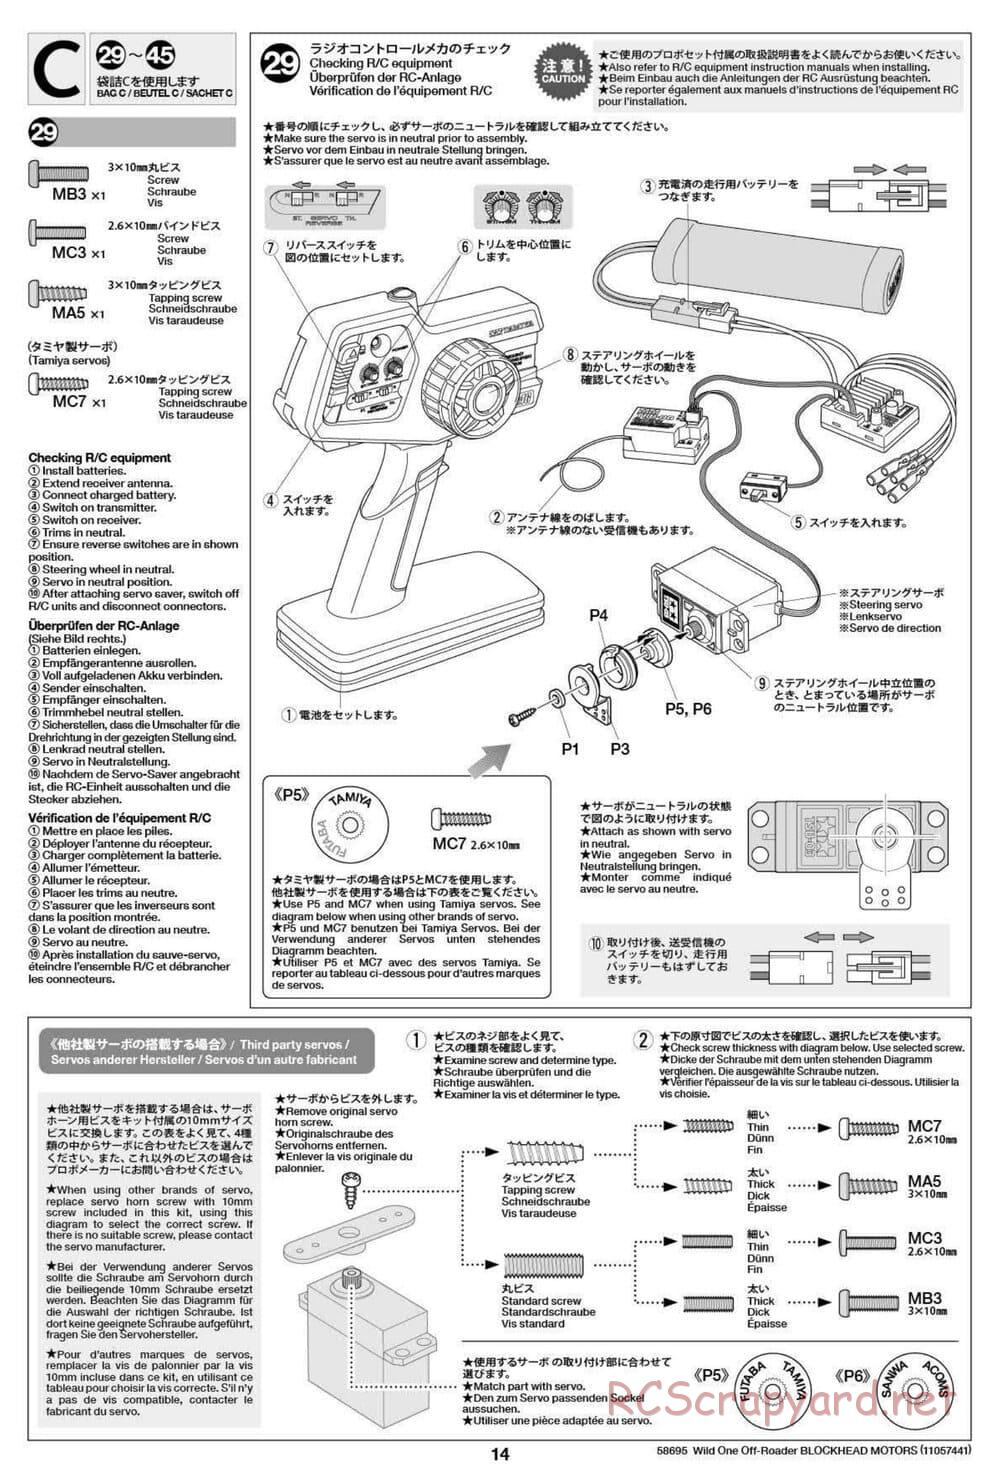 Tamiya - Wild One Off Roader Blockhead Motors - FAV Chassis - Manual - Page 14